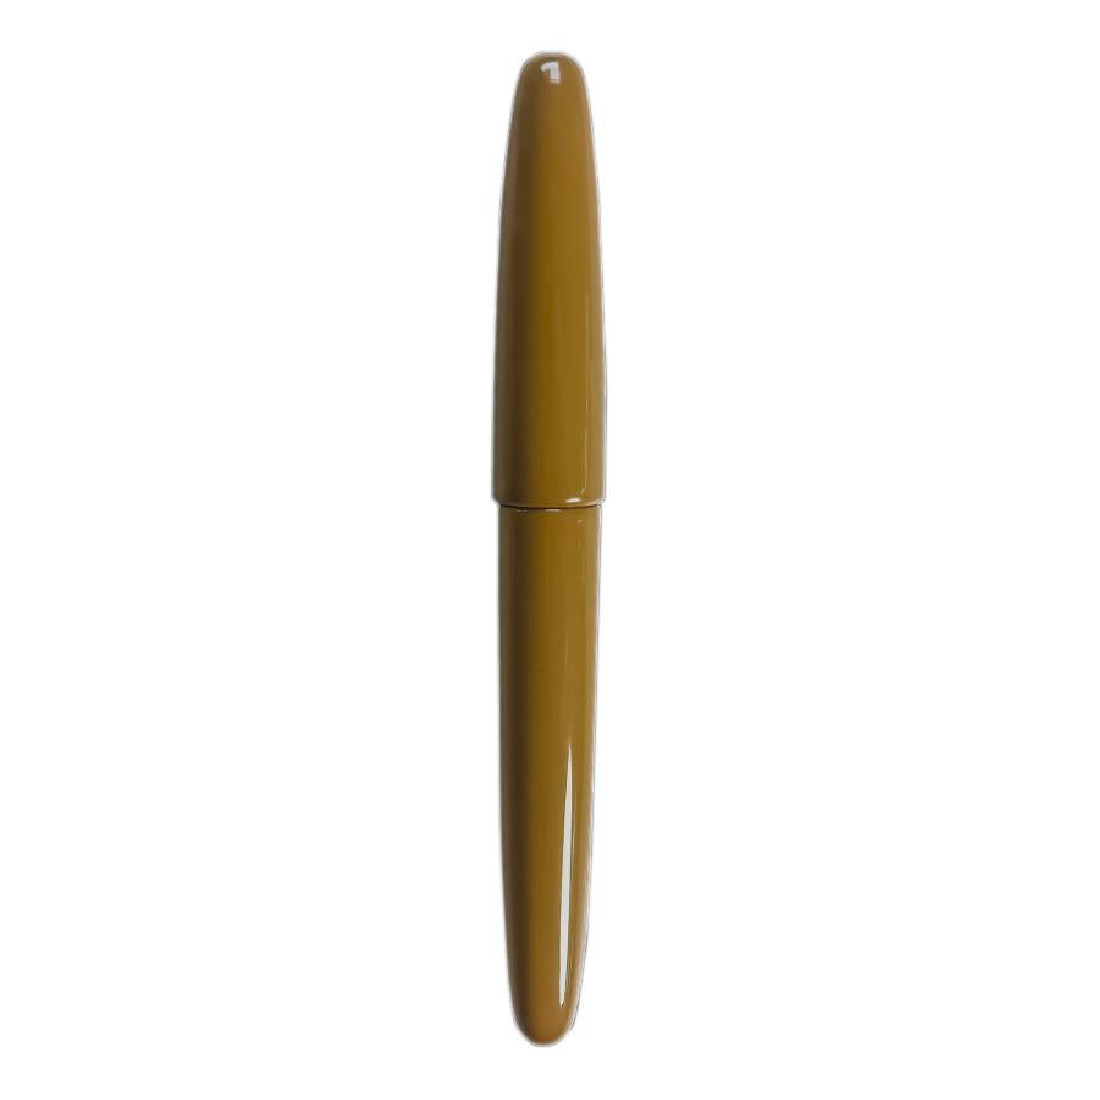 Wancher Dream Pen True Urushi Yellow - 18k Gold Nib